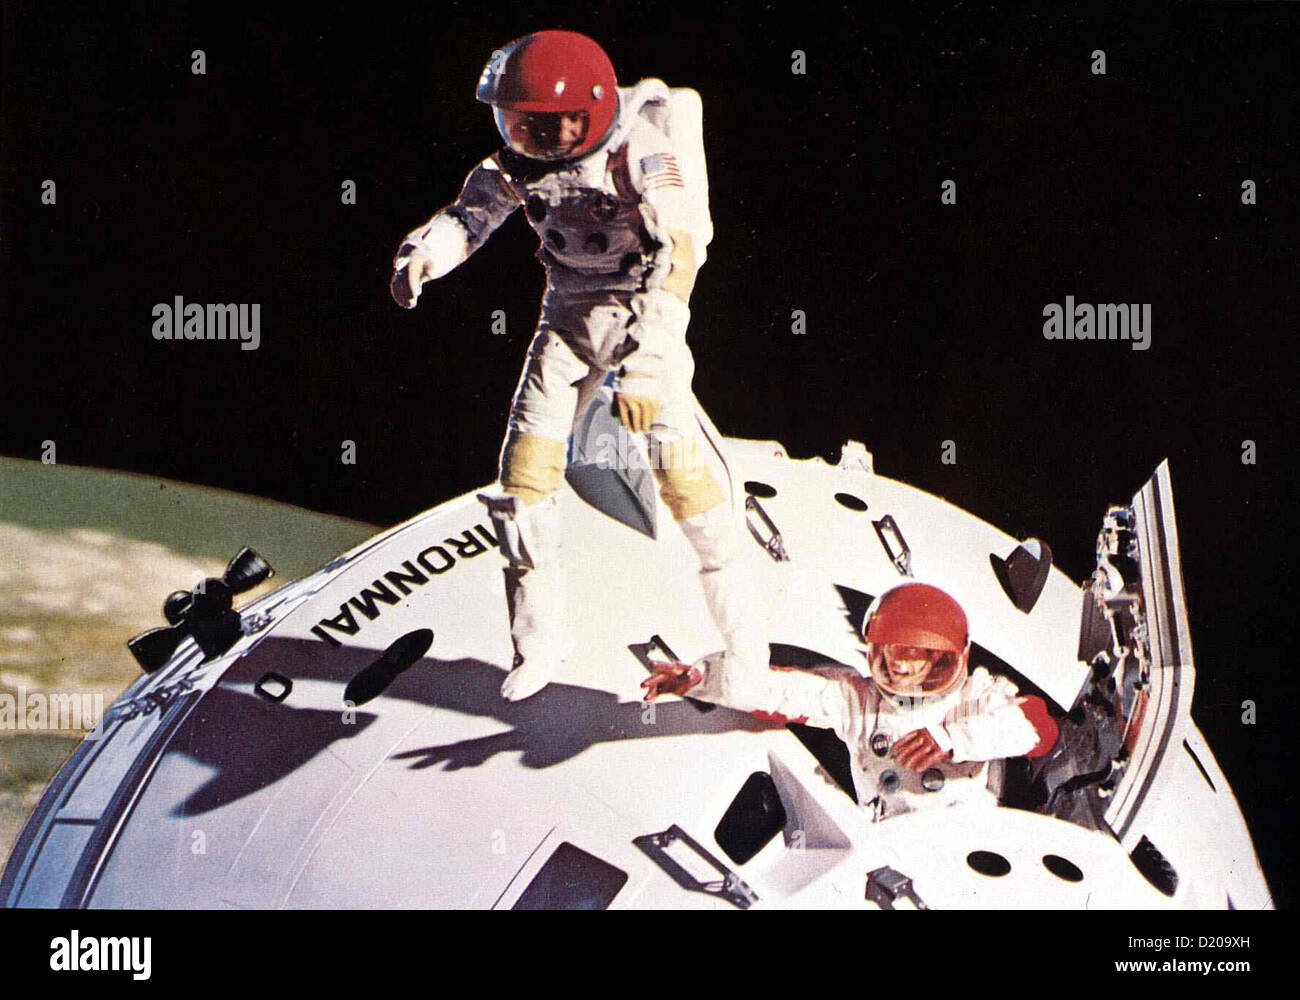 Verschollen Im Weltraum  Marooned  Ein sowjetisches Raumschiff kann die Astronauten in letzter Minute retten. *** Local Caption Stock Photo